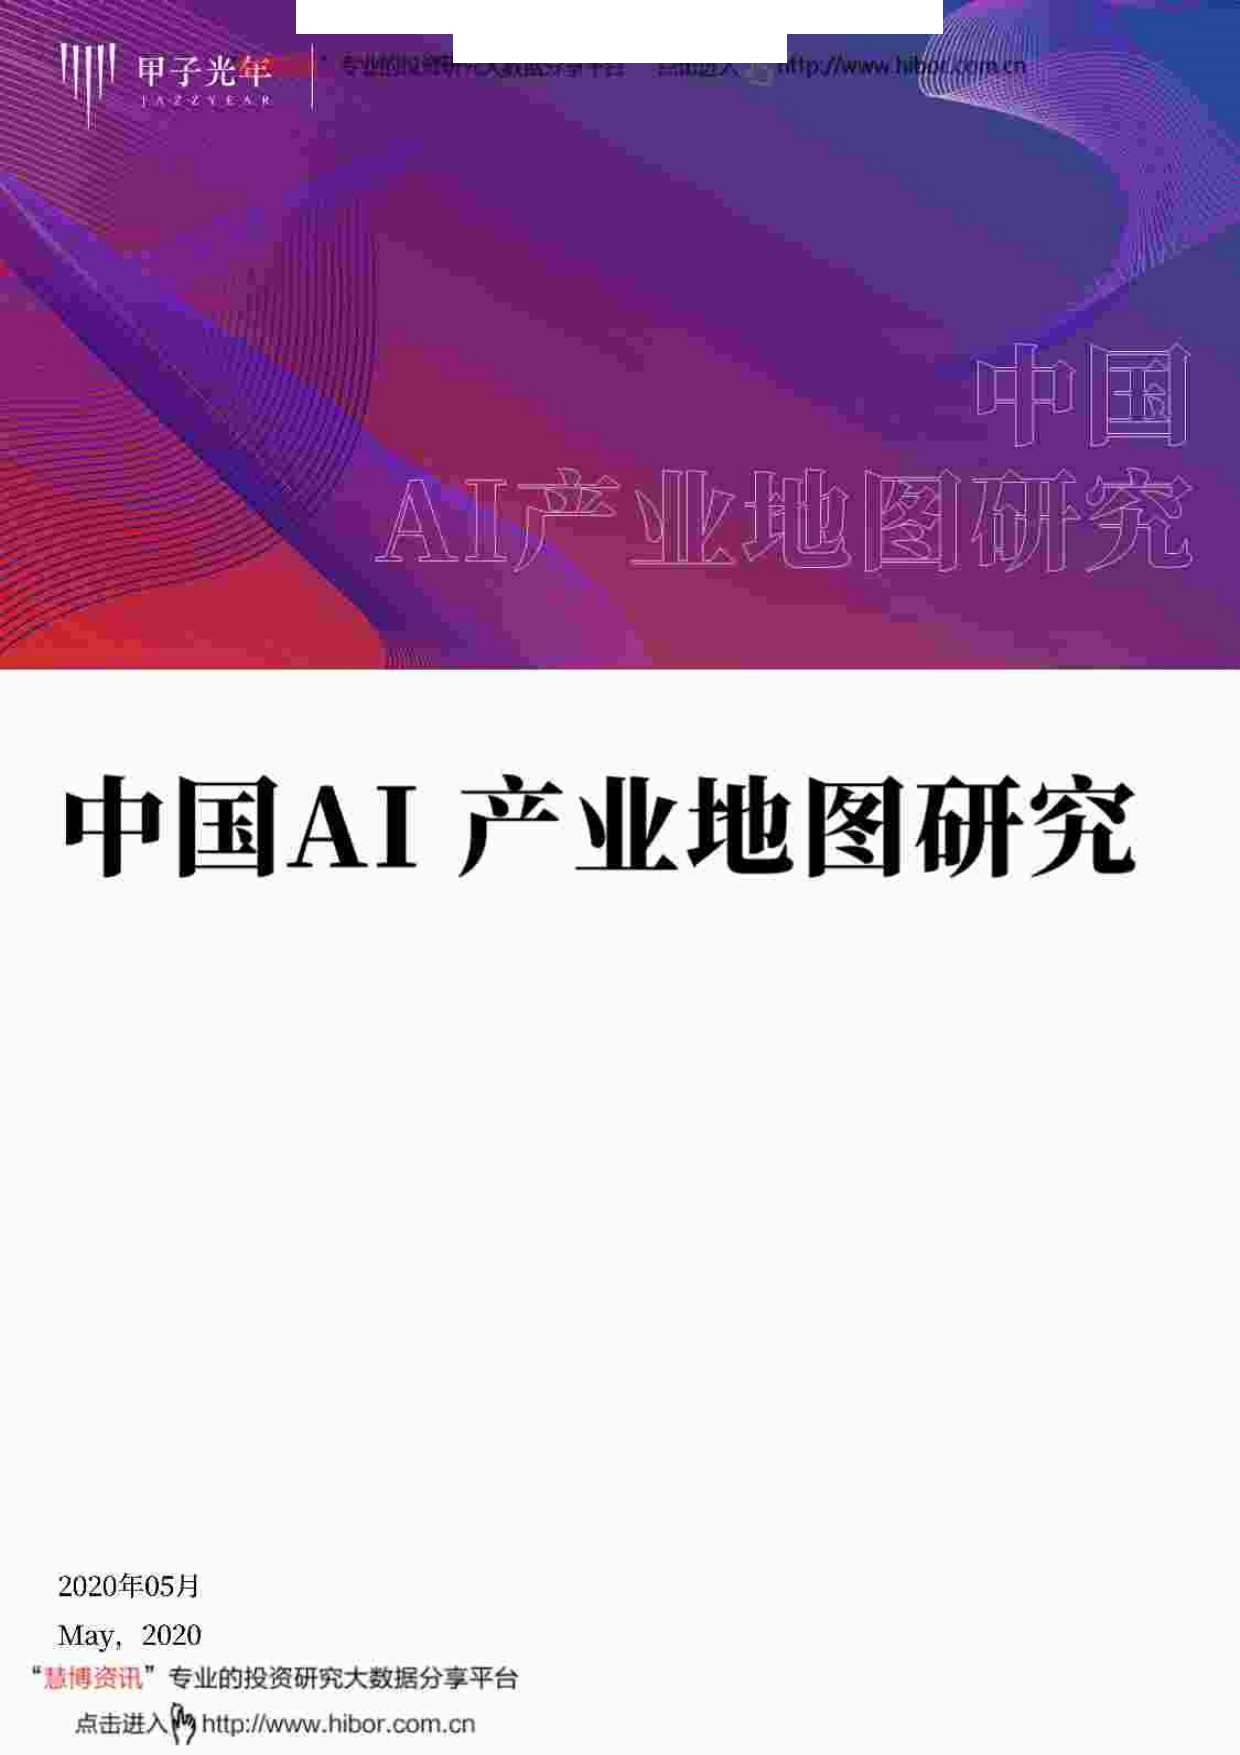 甲子光年--人工智能行业_中国AI产业地图研究-2020-05-29